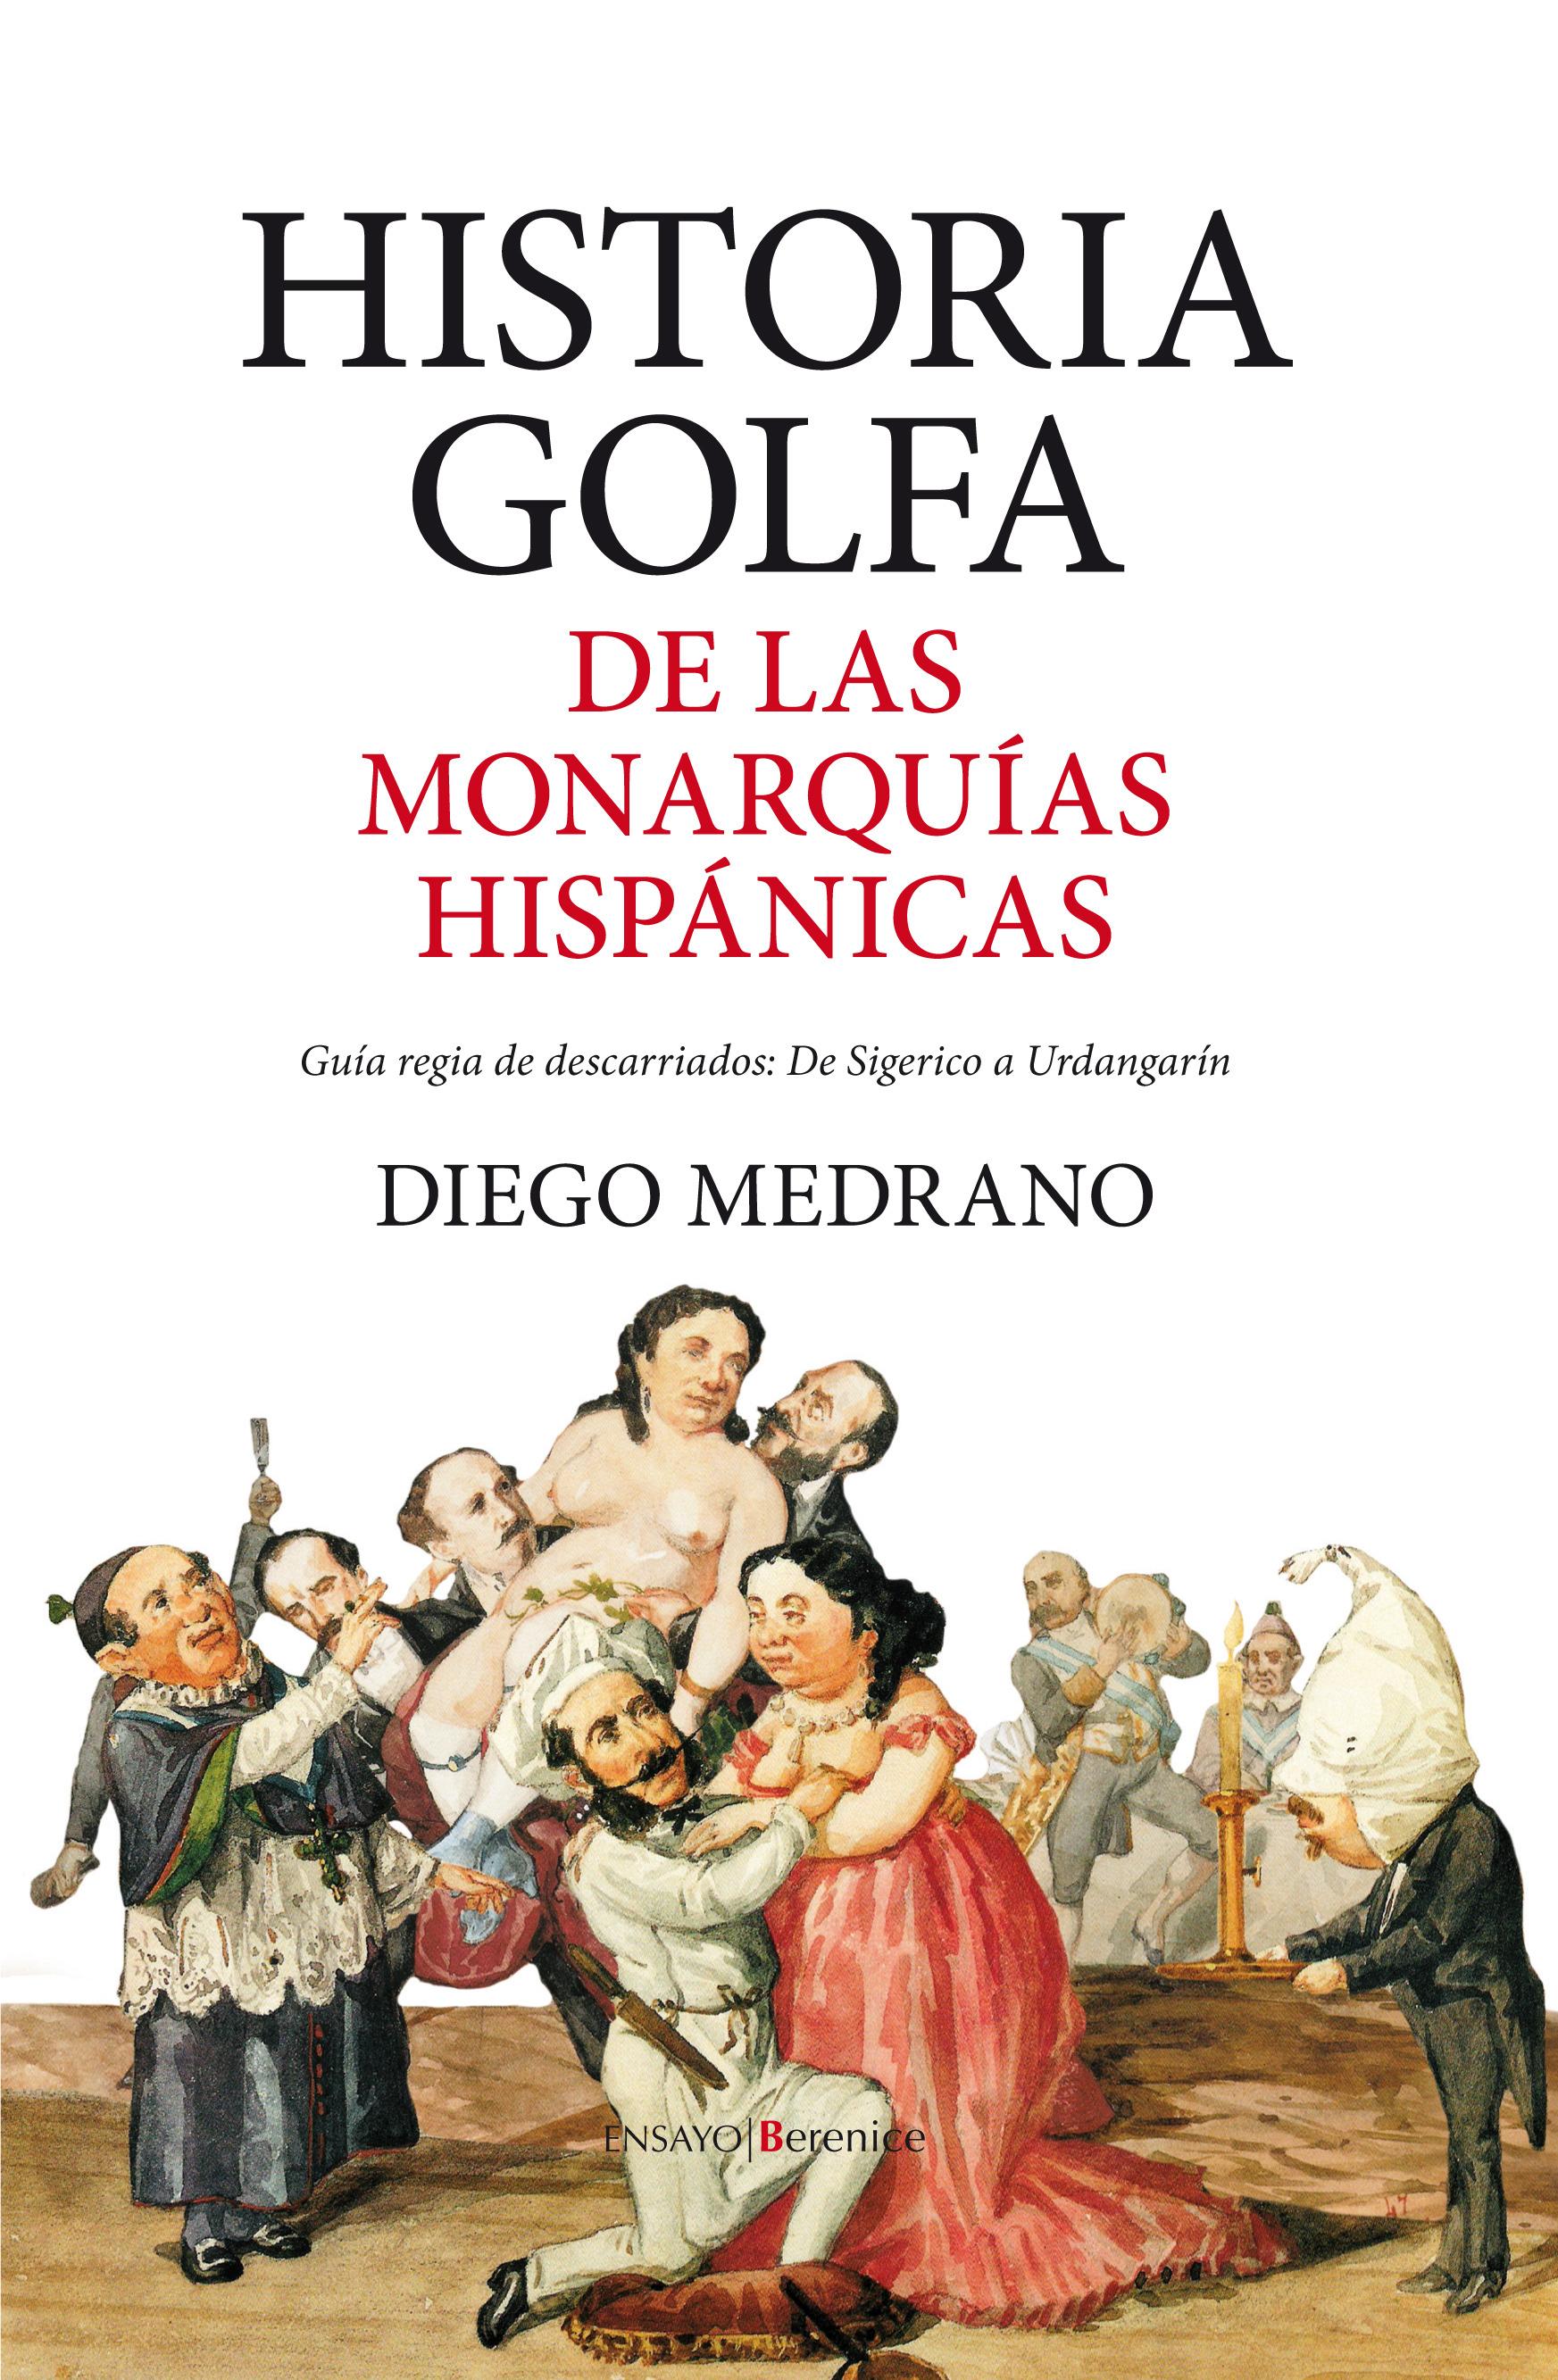 Foto Historia golfa de las monarquías hispánicas